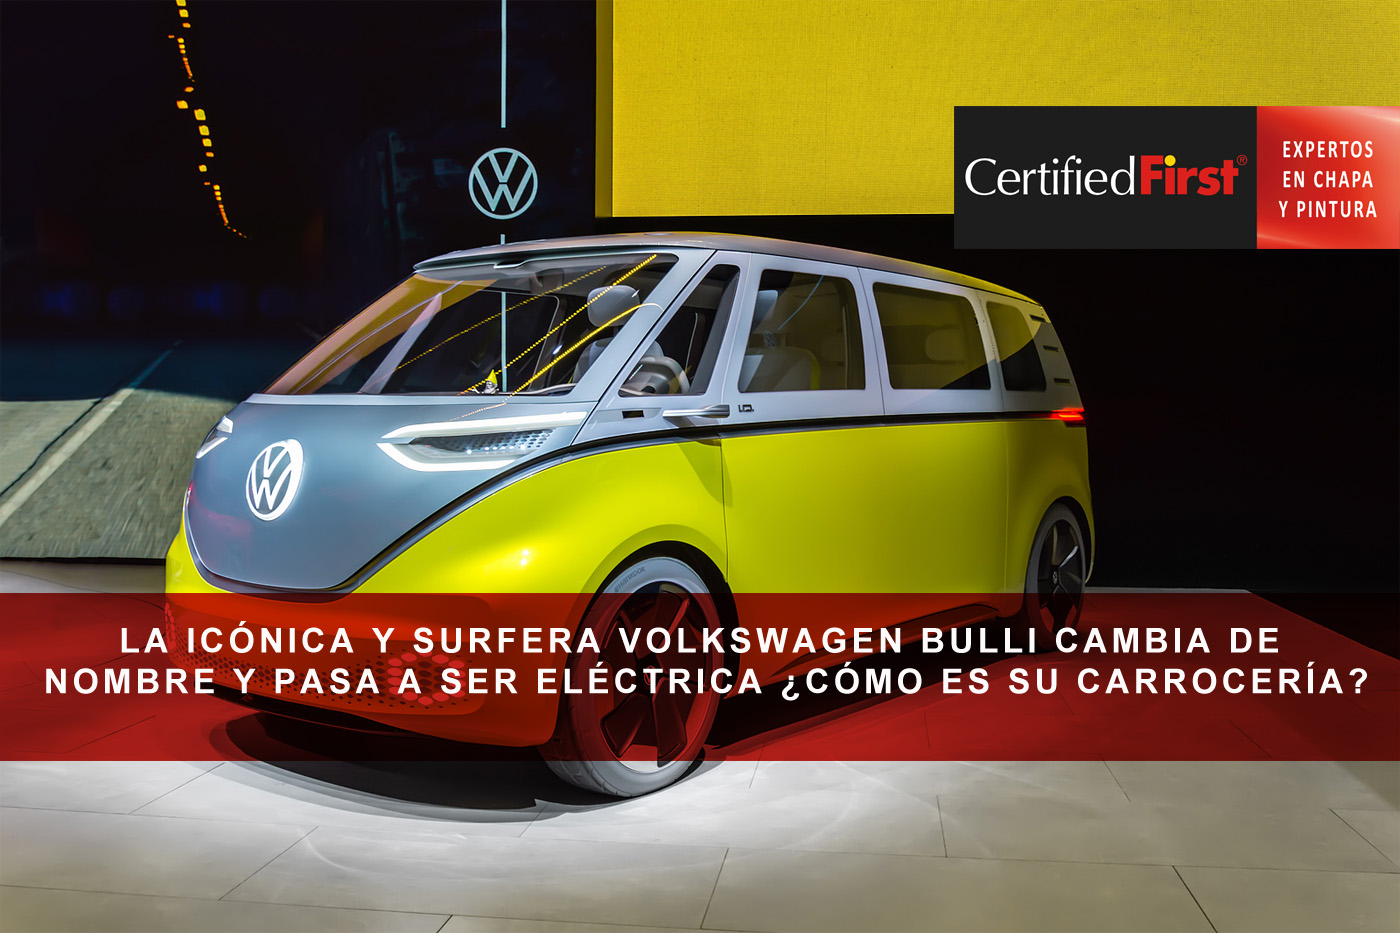 La icónica y surfera Volkswagen Bulli cambia de nombre y pasa a ser eléctrica ¿cómo es su carrocería?